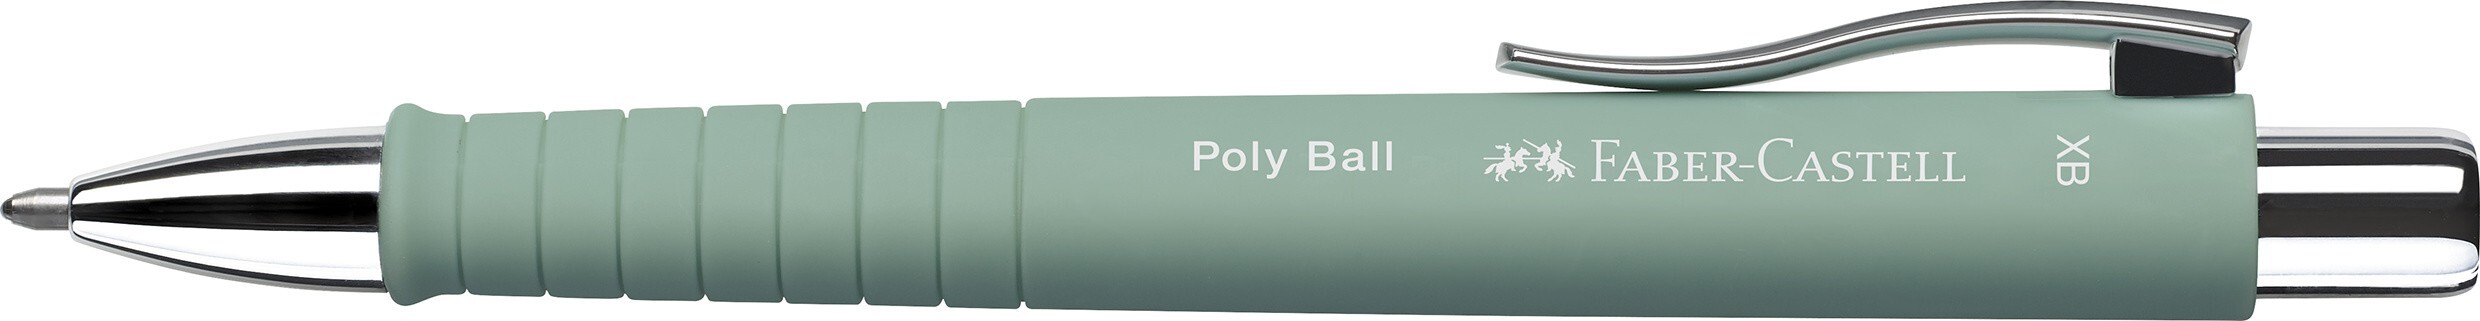 Faber-Castell Kugelschreiber Poly Ball XB mintgrün